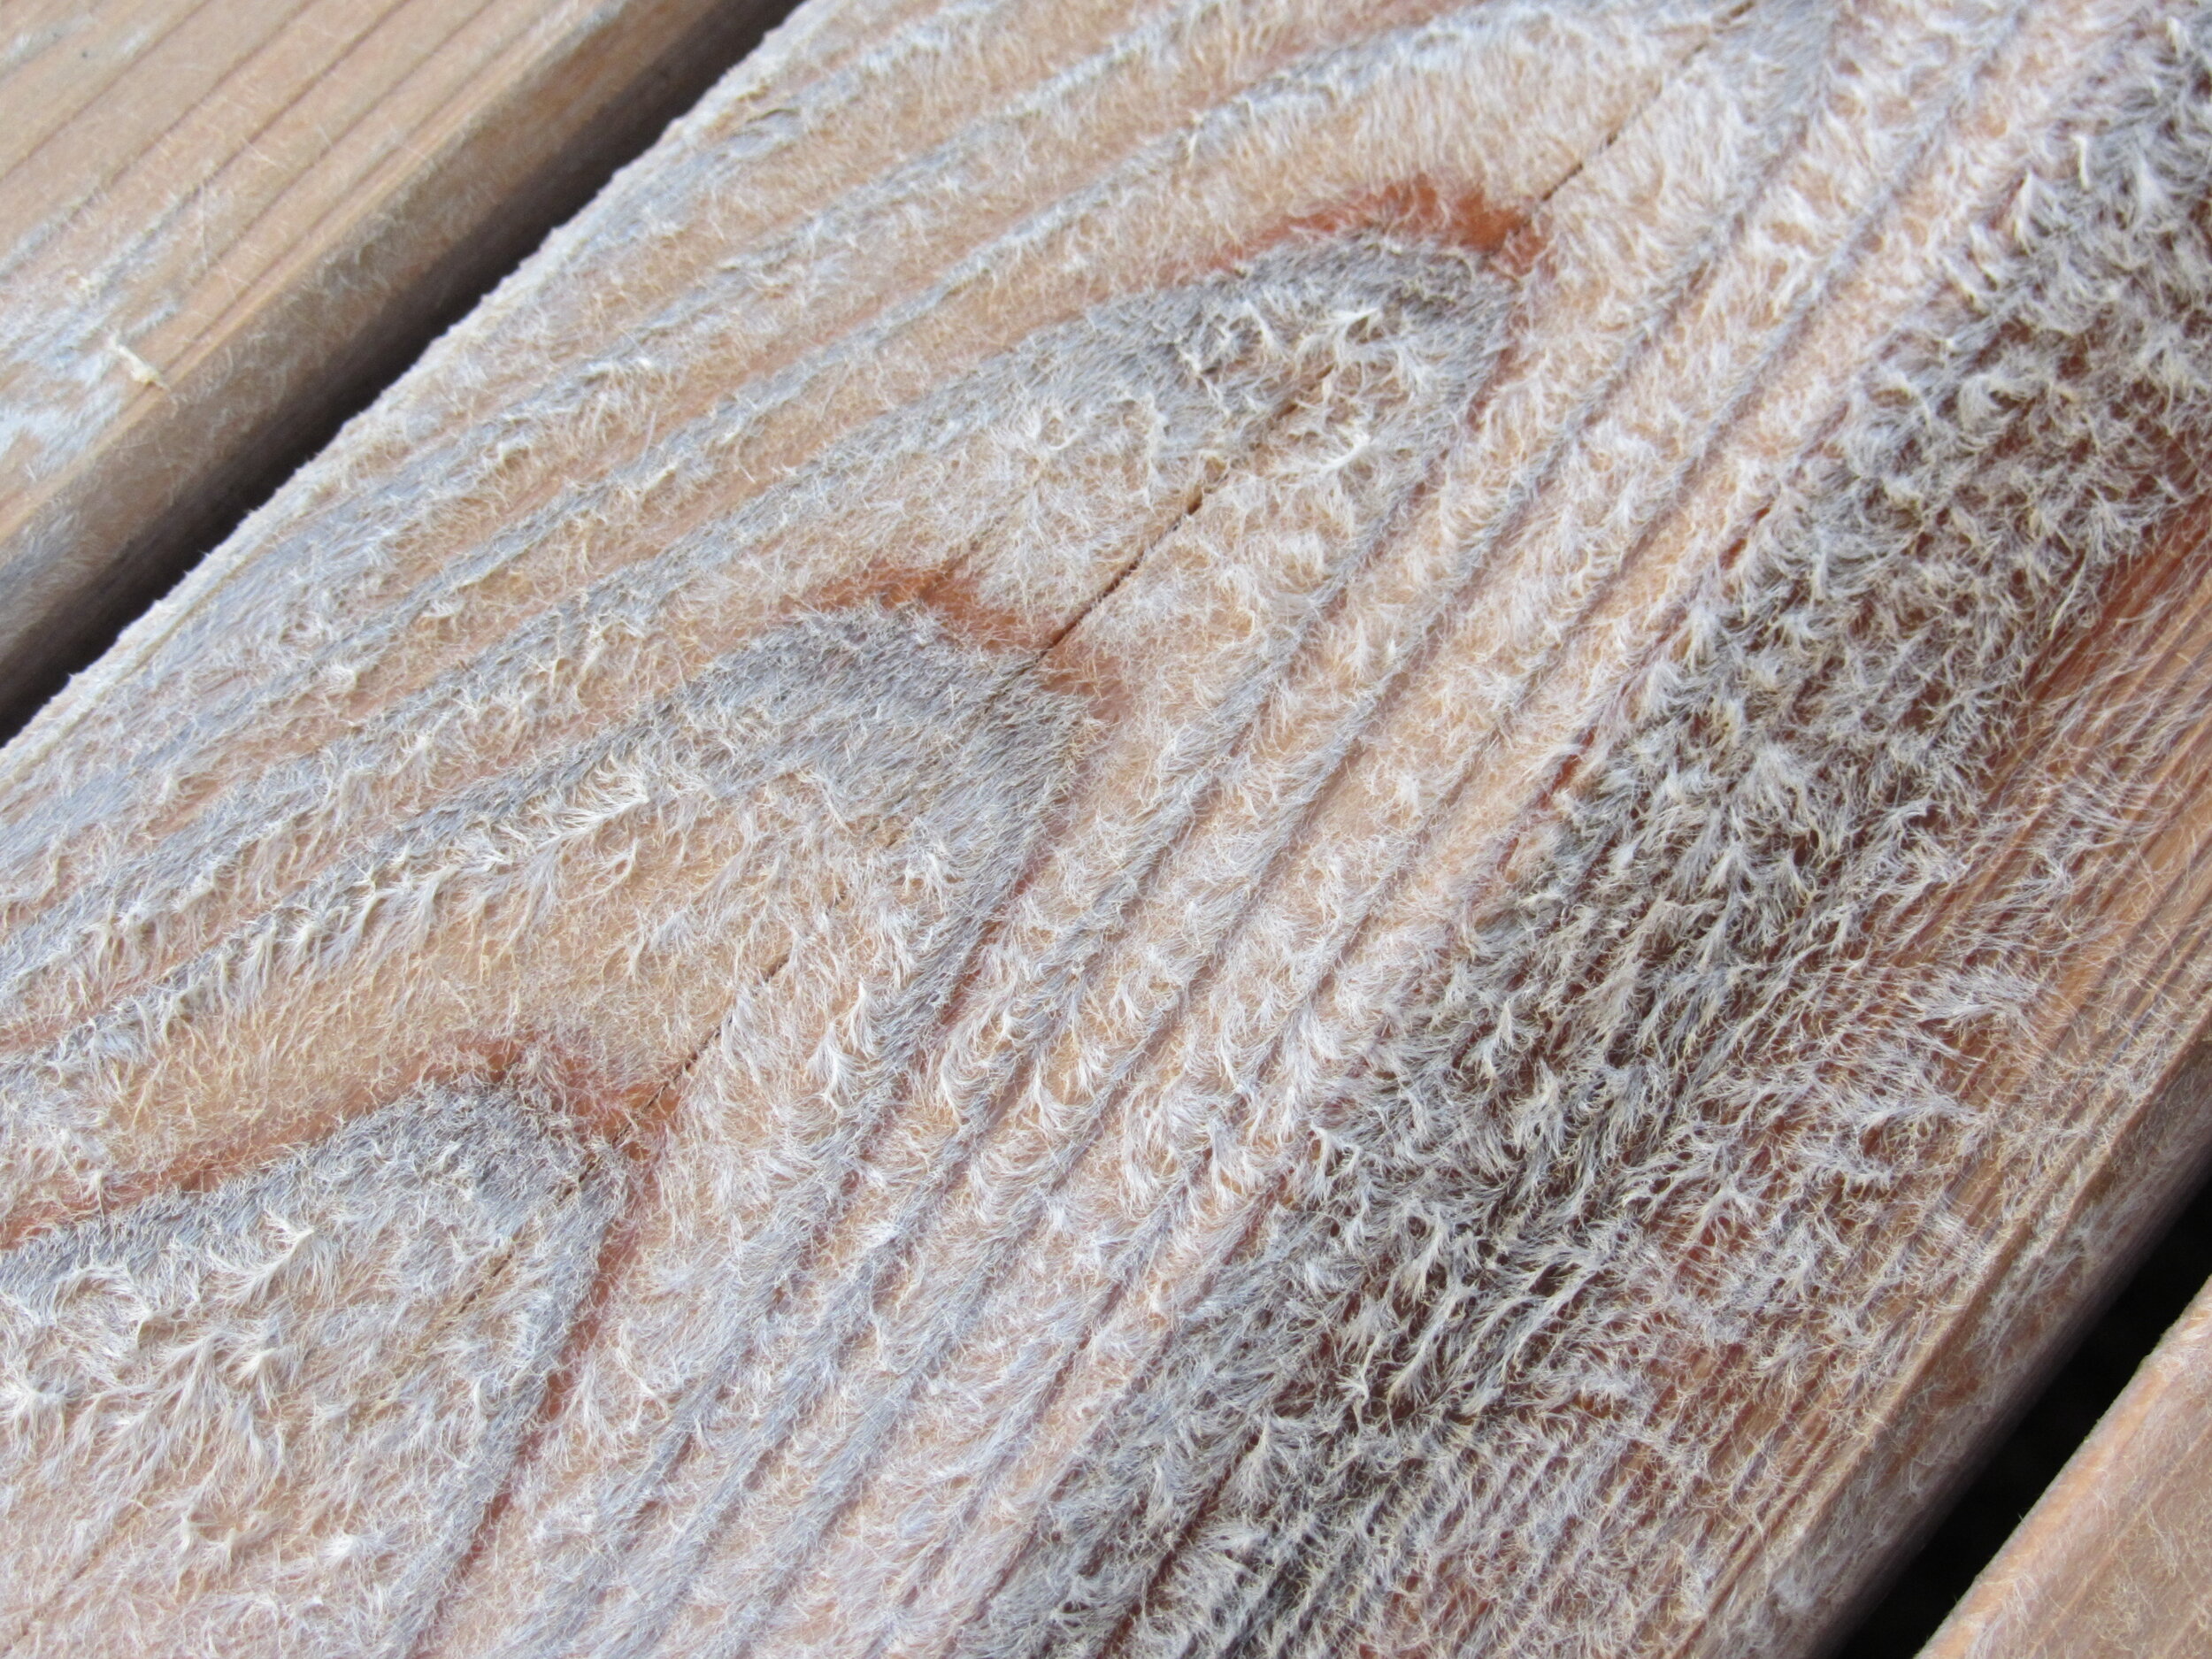 Lifted Deck Wood Fibers